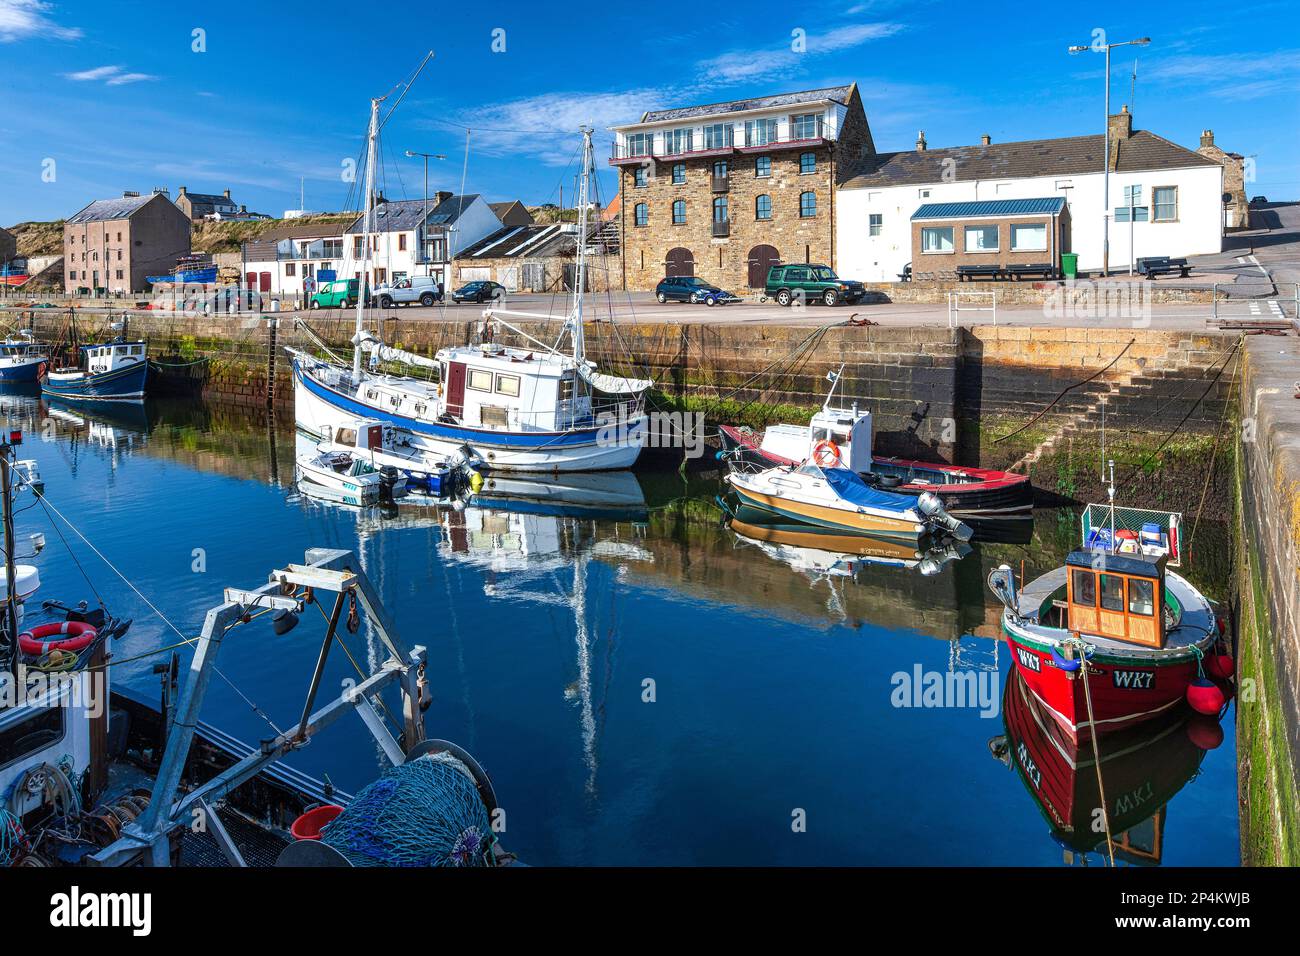 Été ensoleillé vue de jour du port de Burghead avec bateaux de pêche amarrés et yachts de plaisance sur le Moray Firth en Écosse Banque D'Images